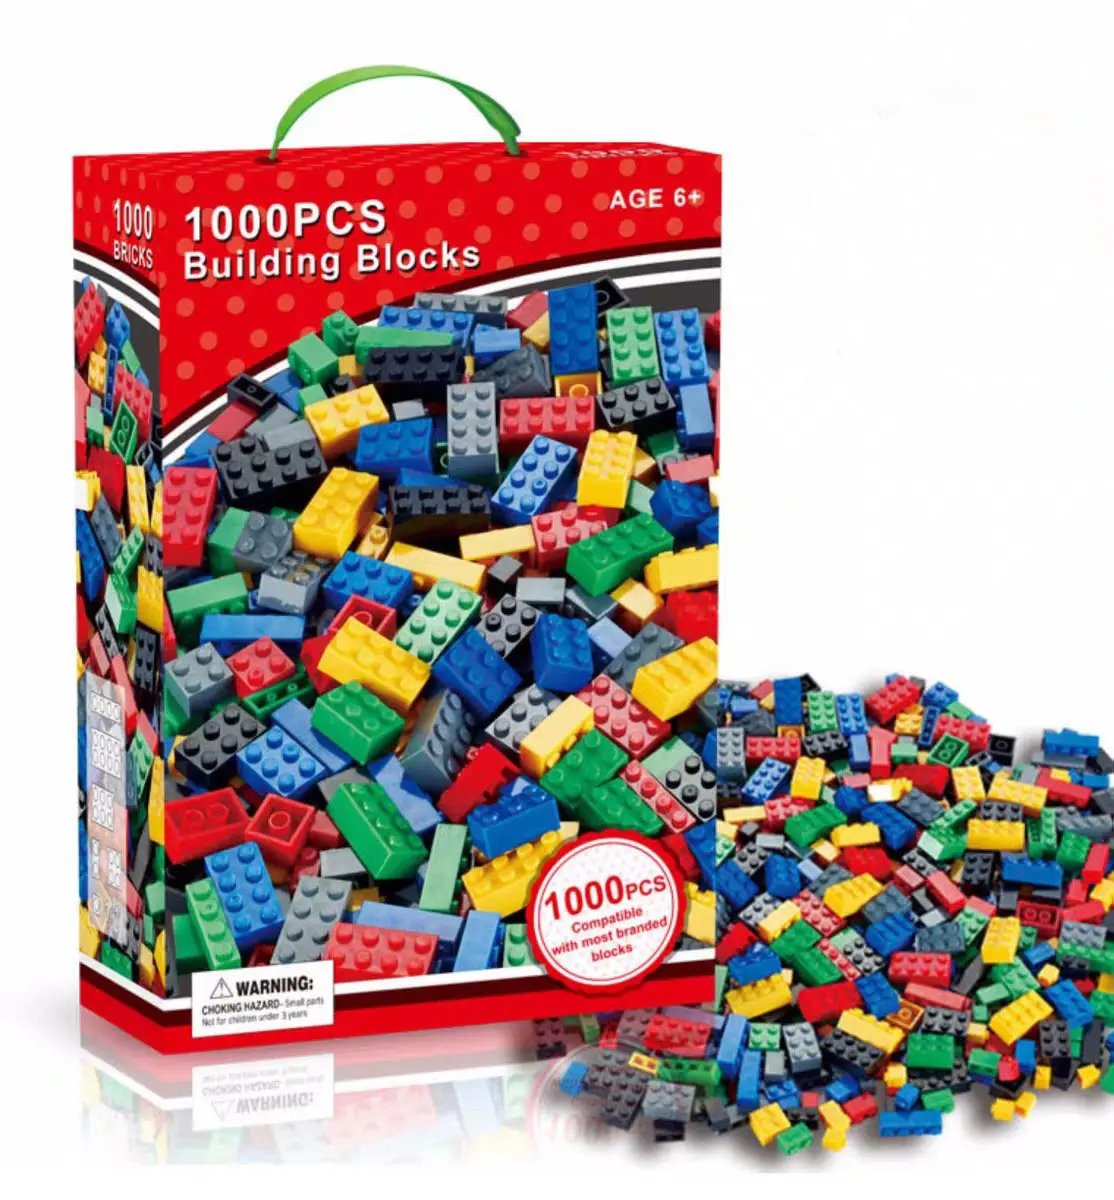 1000pcs क्लासिक Legoing एबीएस बिल्डिंग ब्लॉक्स सेट उपकरण ईंटें शिक्षा खिलौने संगत बिल्डिंग ब्लॉक खिलौने बच्चों के लिए